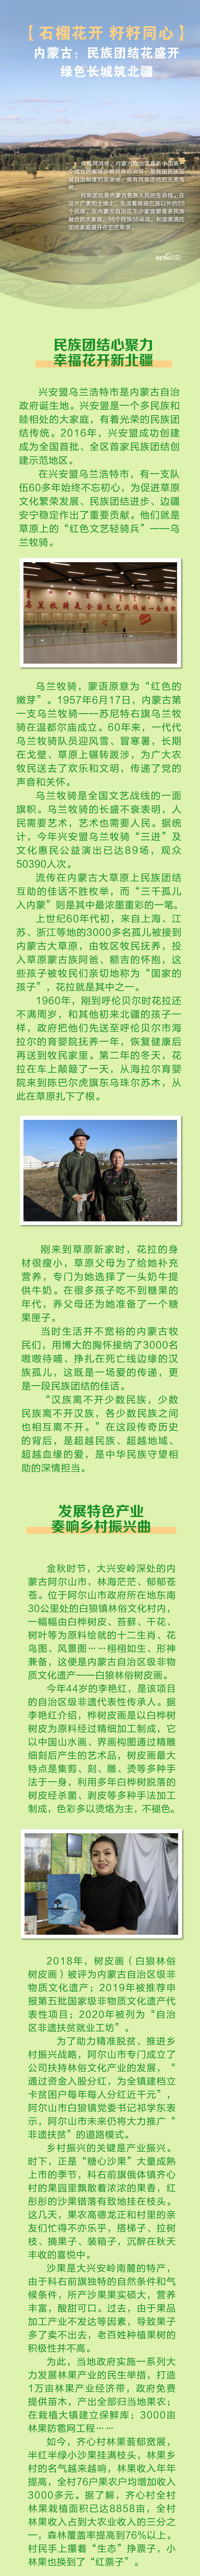 【石榴花开 籽籽同心】内蒙古：民族团结花盛开 绿色长城筑北疆